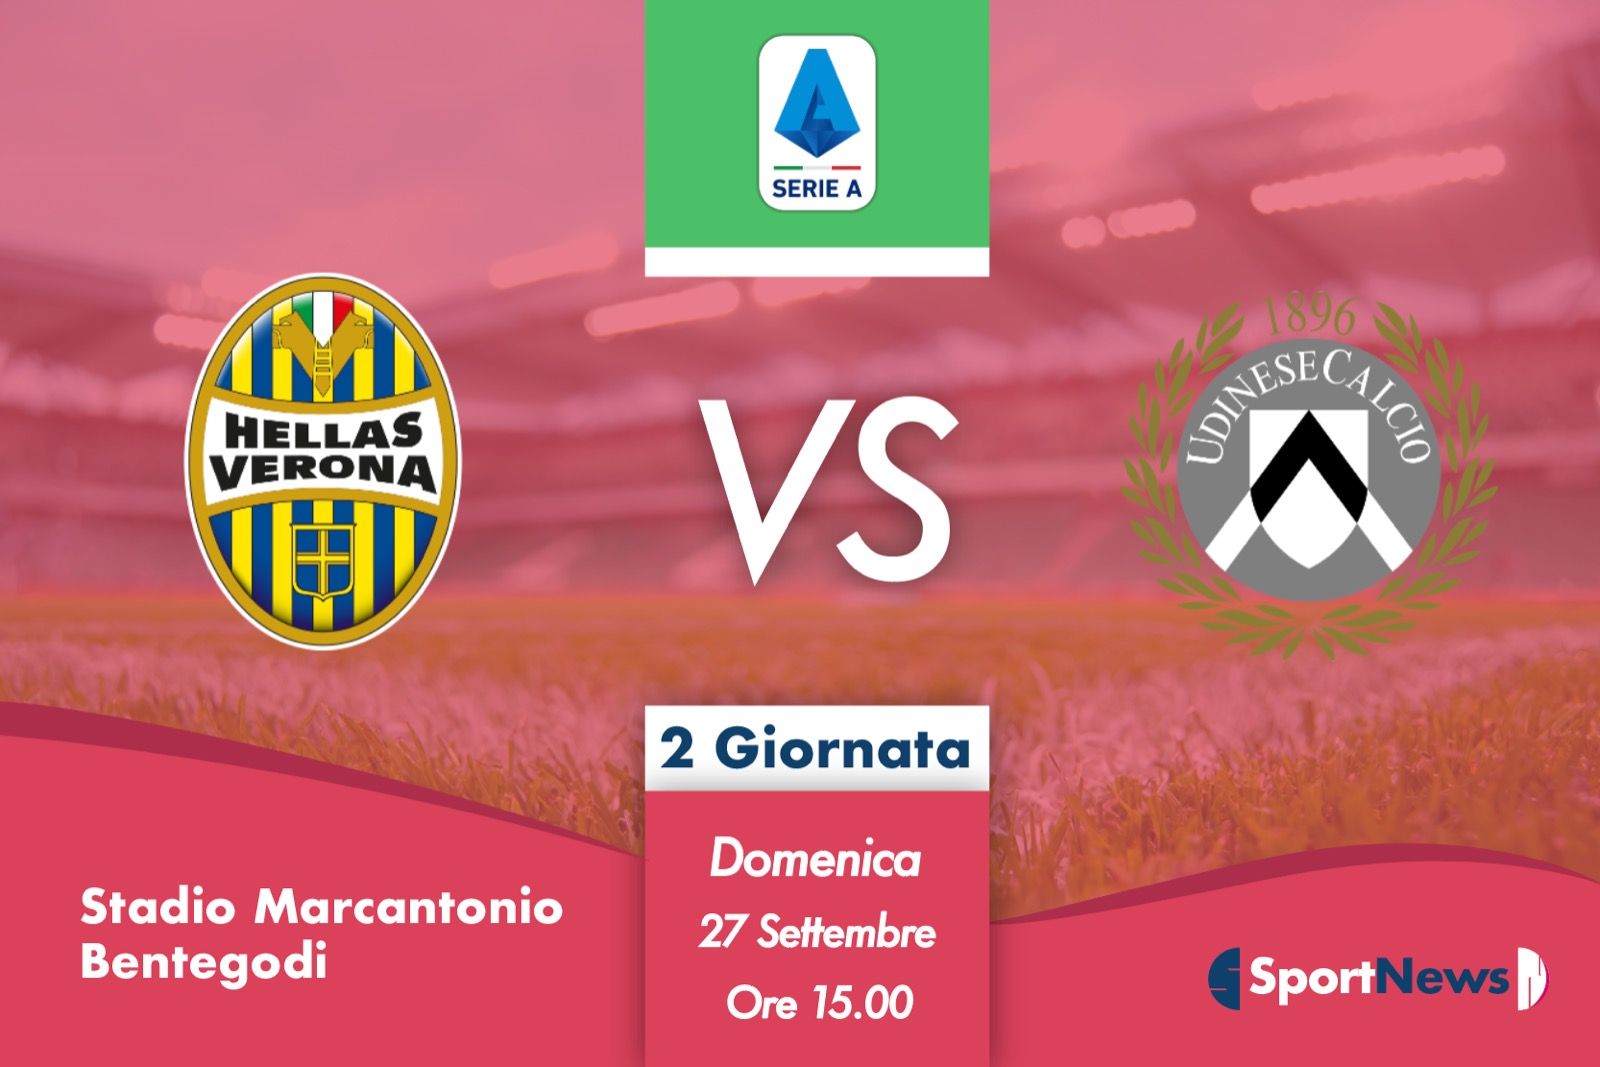 Serie A | 2ª Giornata : Verona-Udinese. Probabili formazioni, dove vederla in tv e streaming